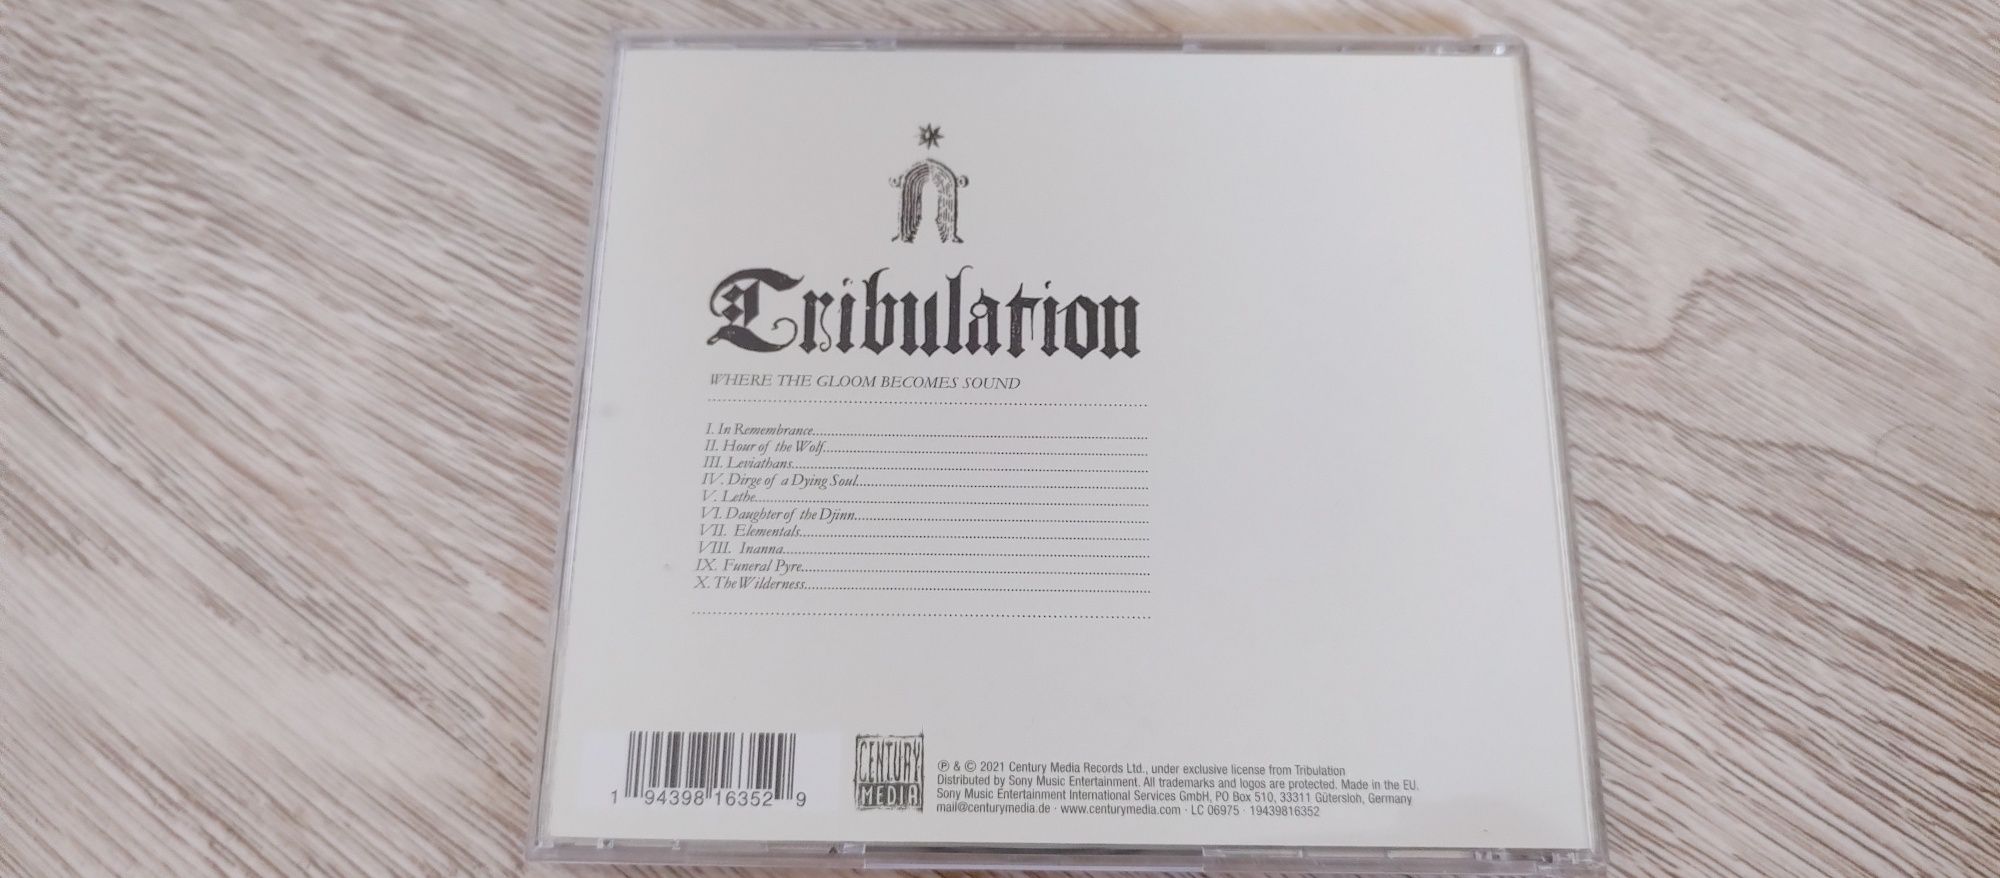 Sprzedam płytę CD Tribulation where the gloom becomes